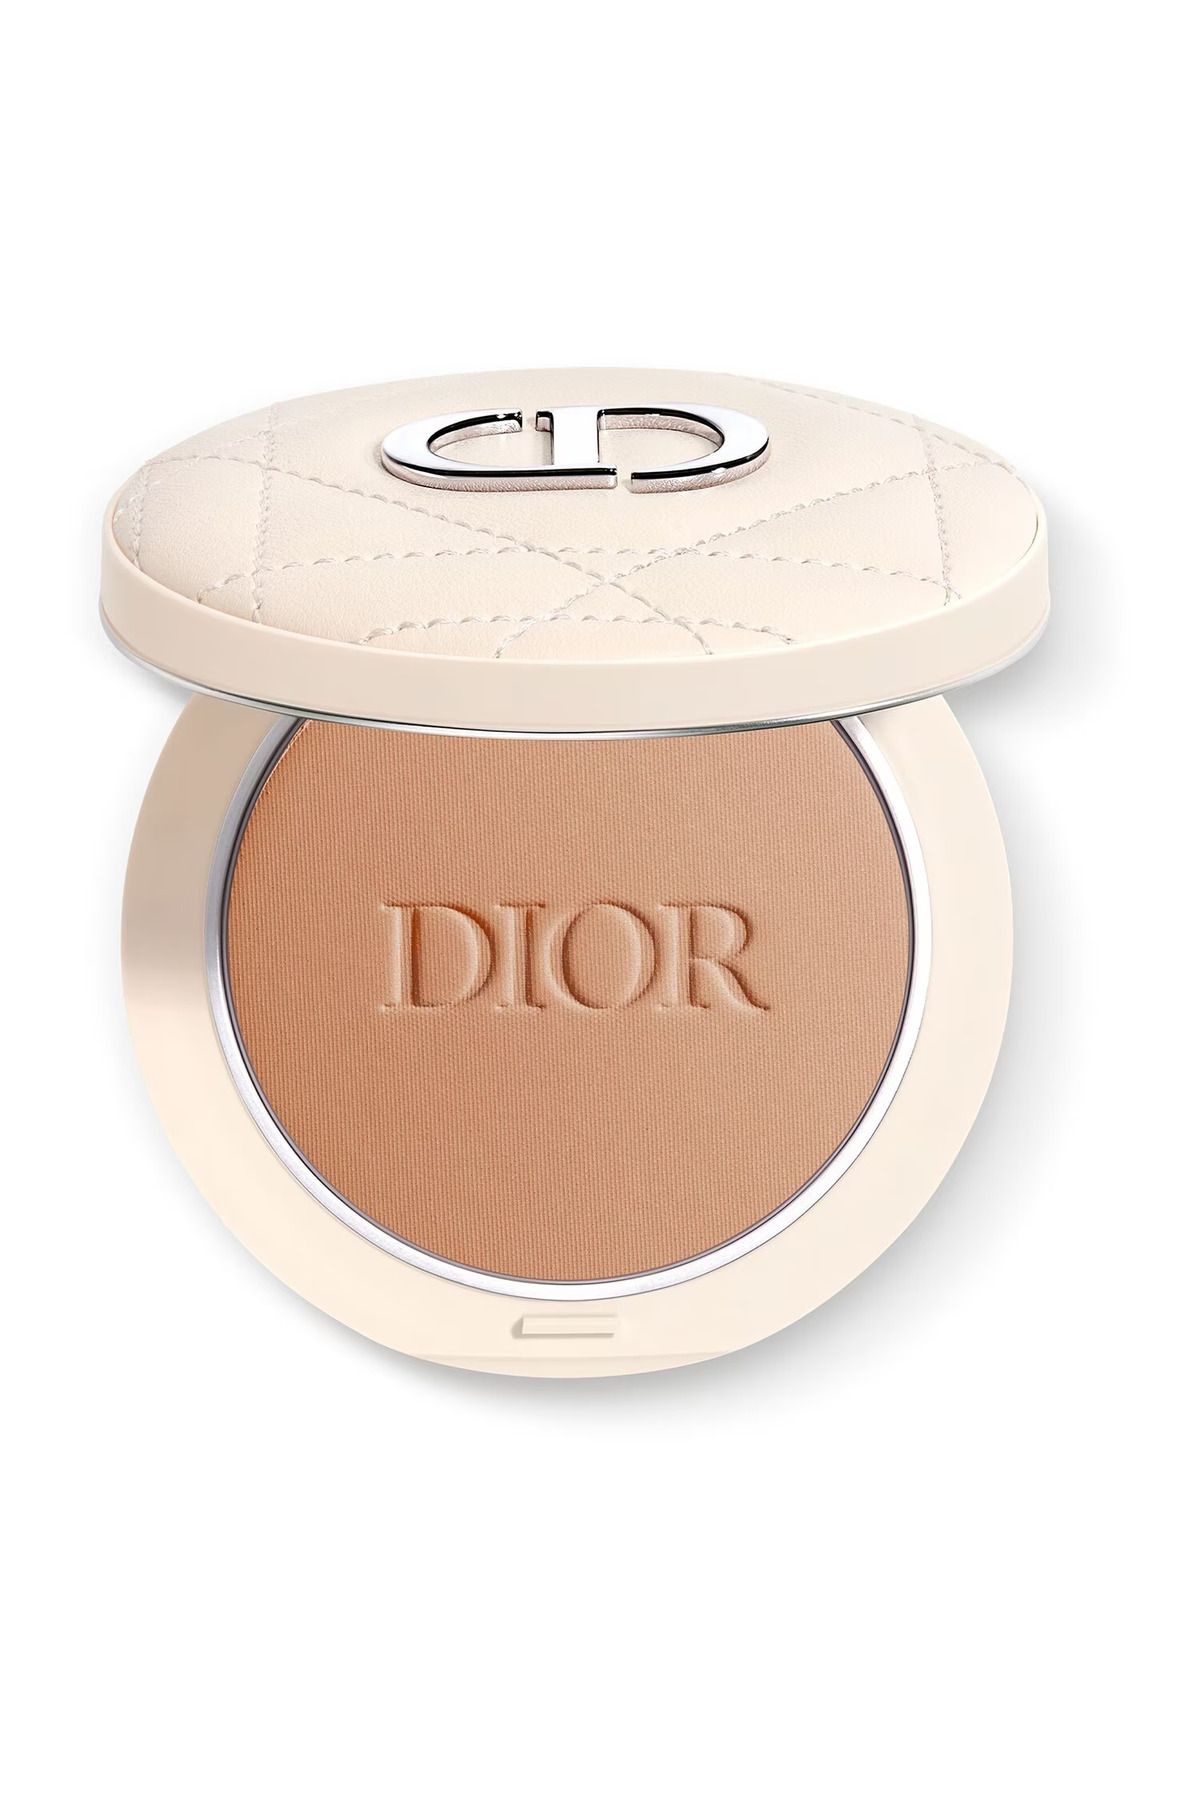 Dior - Bronzlaştırıcı Pudra -Dior Forever Natural Bronze - DIORSKIN FOREVER BRONZER POWDER 004